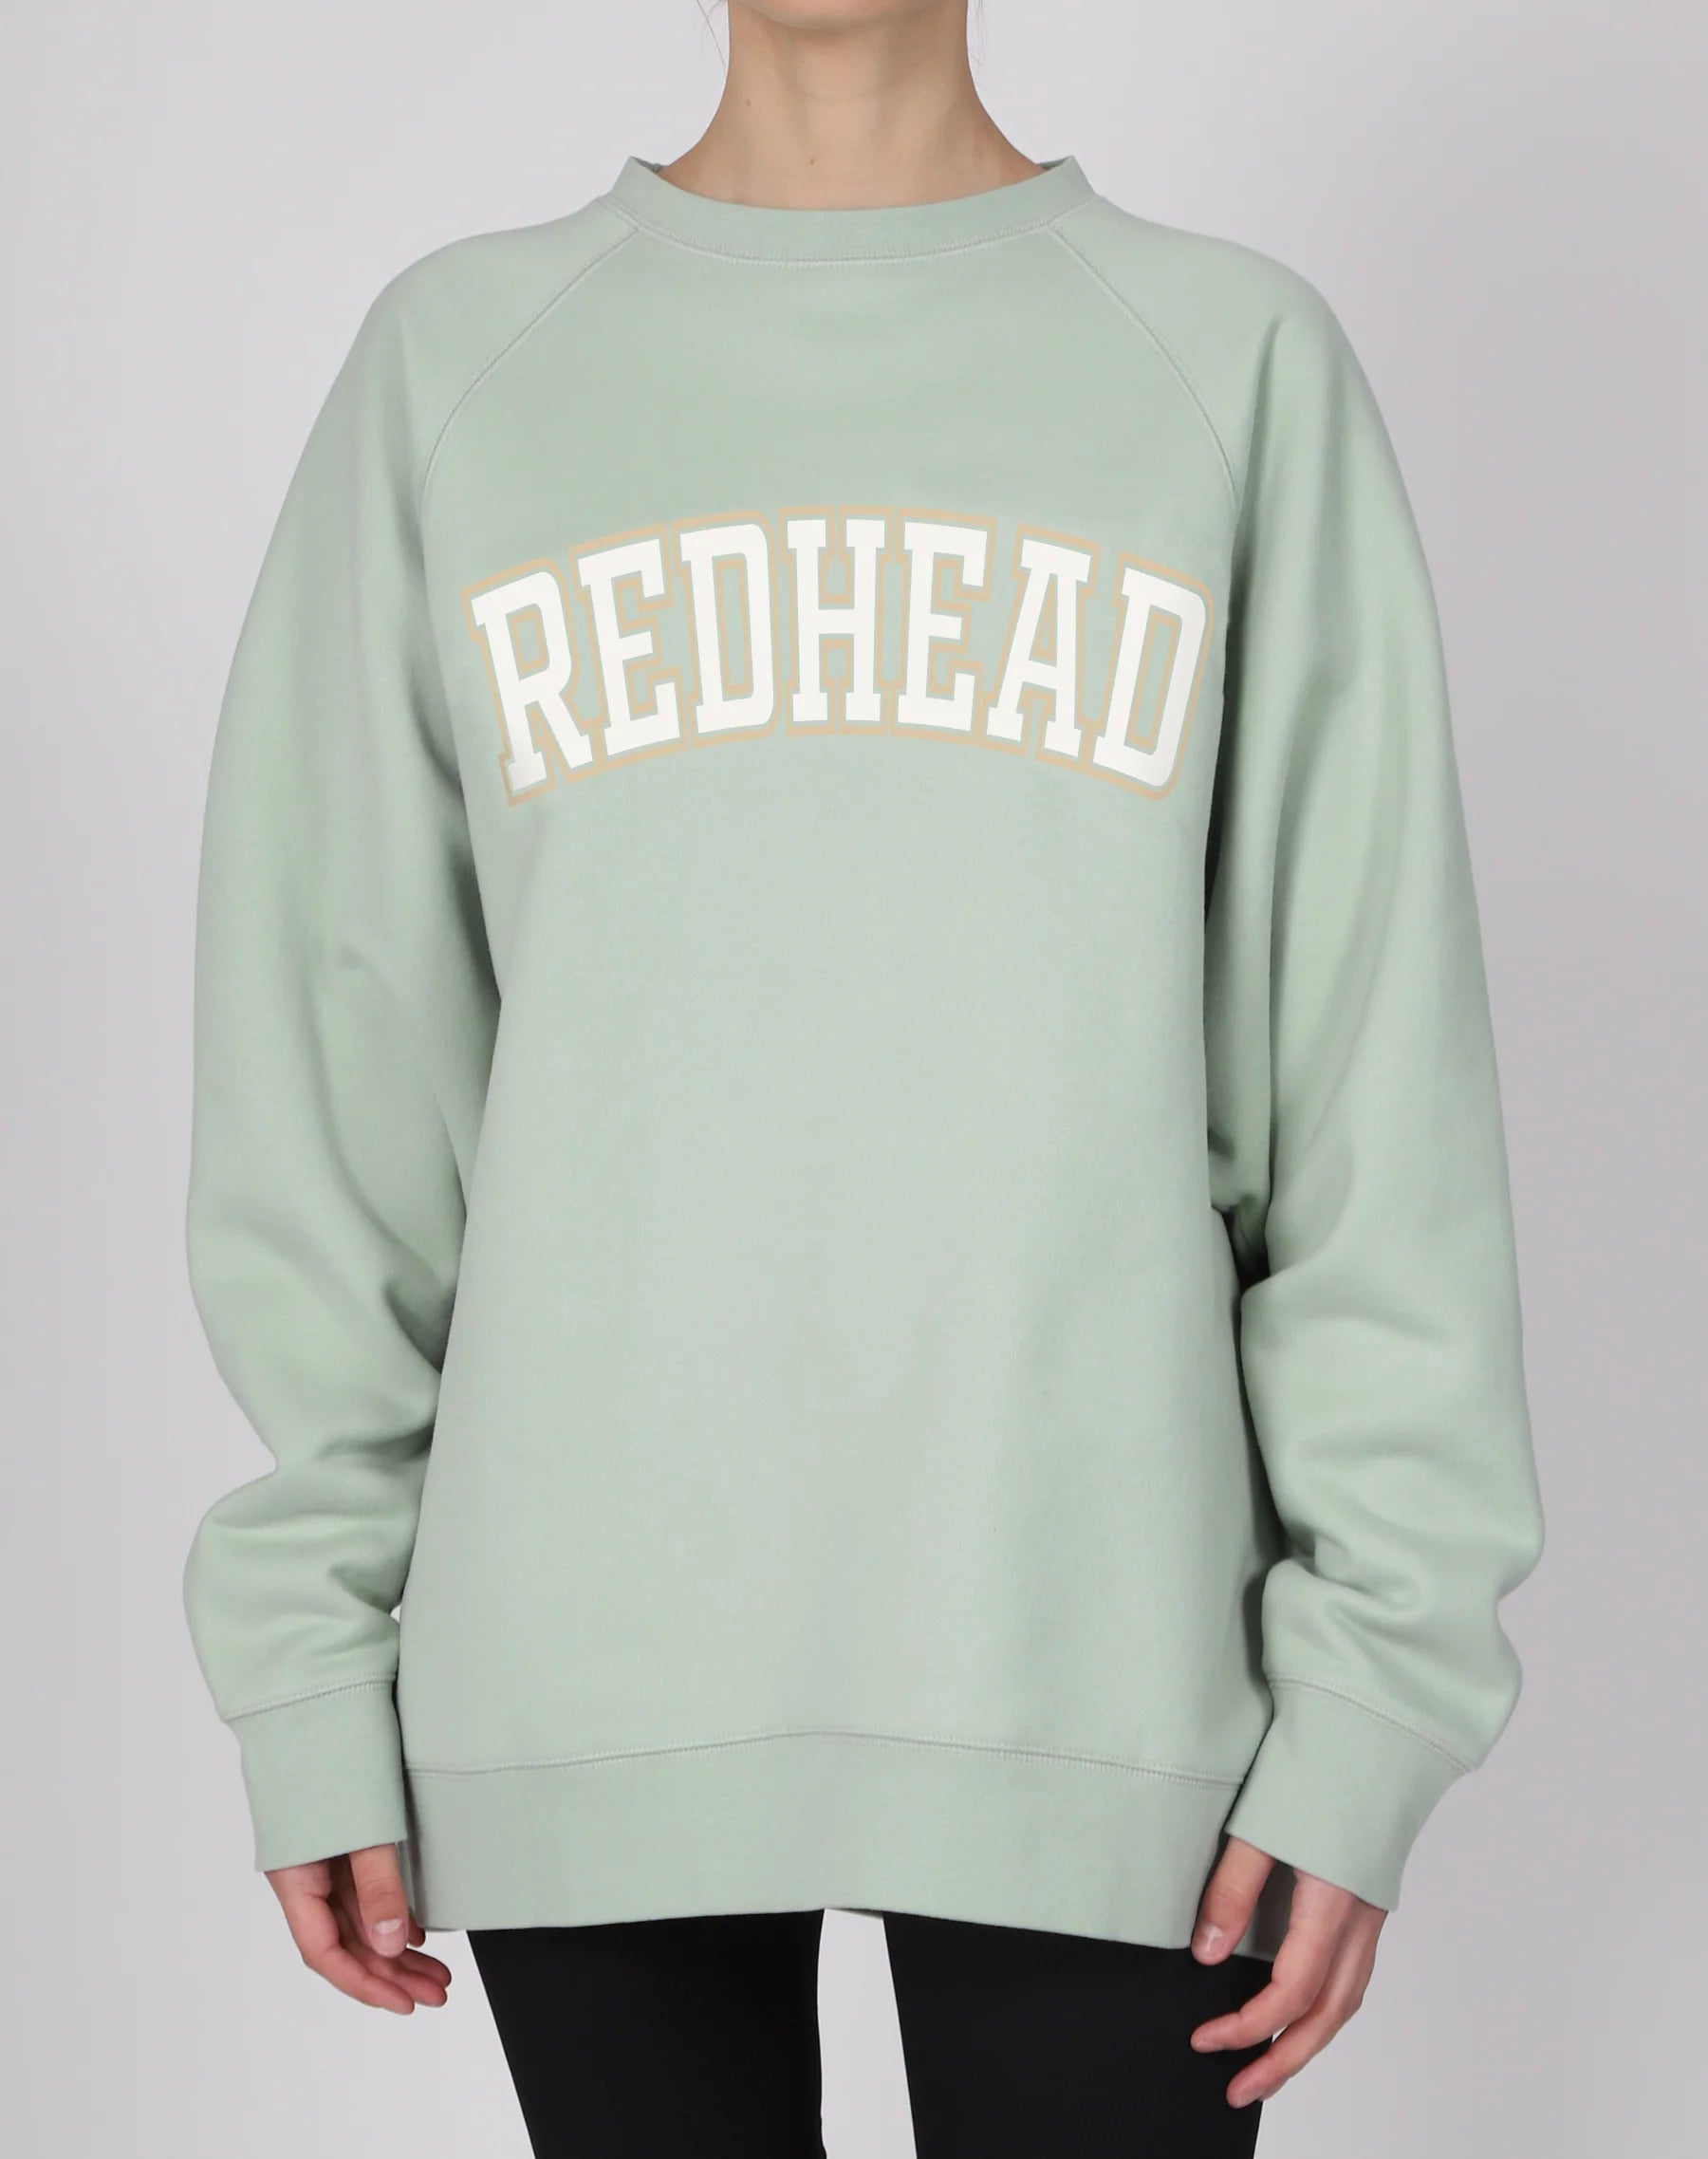 The "REDHEAD" Not Your Boyfriend's Crew Neck Sweatshirt | Sage - BTL